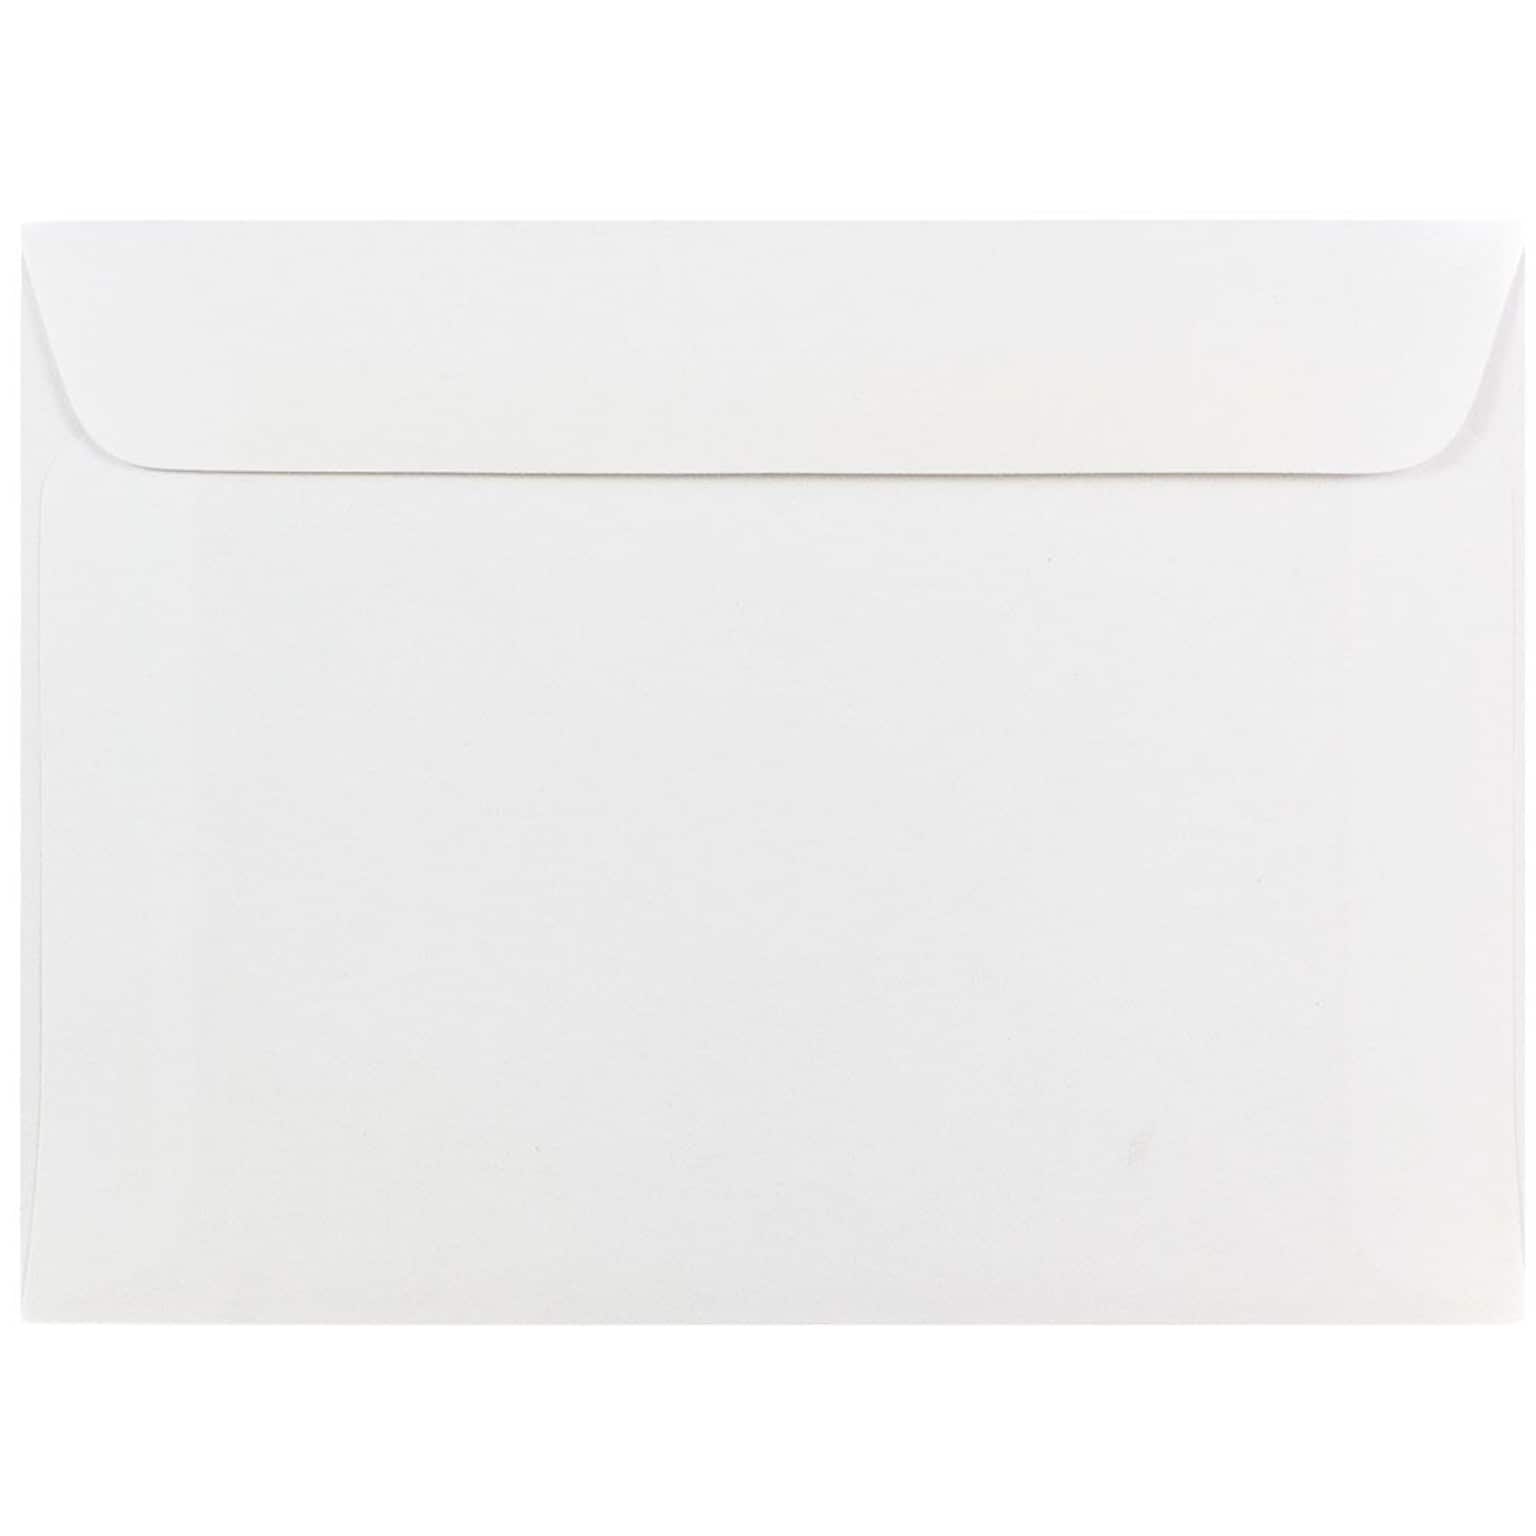 JAM Paper® 5.5 x 7.5 Booklet Commercial Envelopes, White, Bulk 500/Box (4235c)